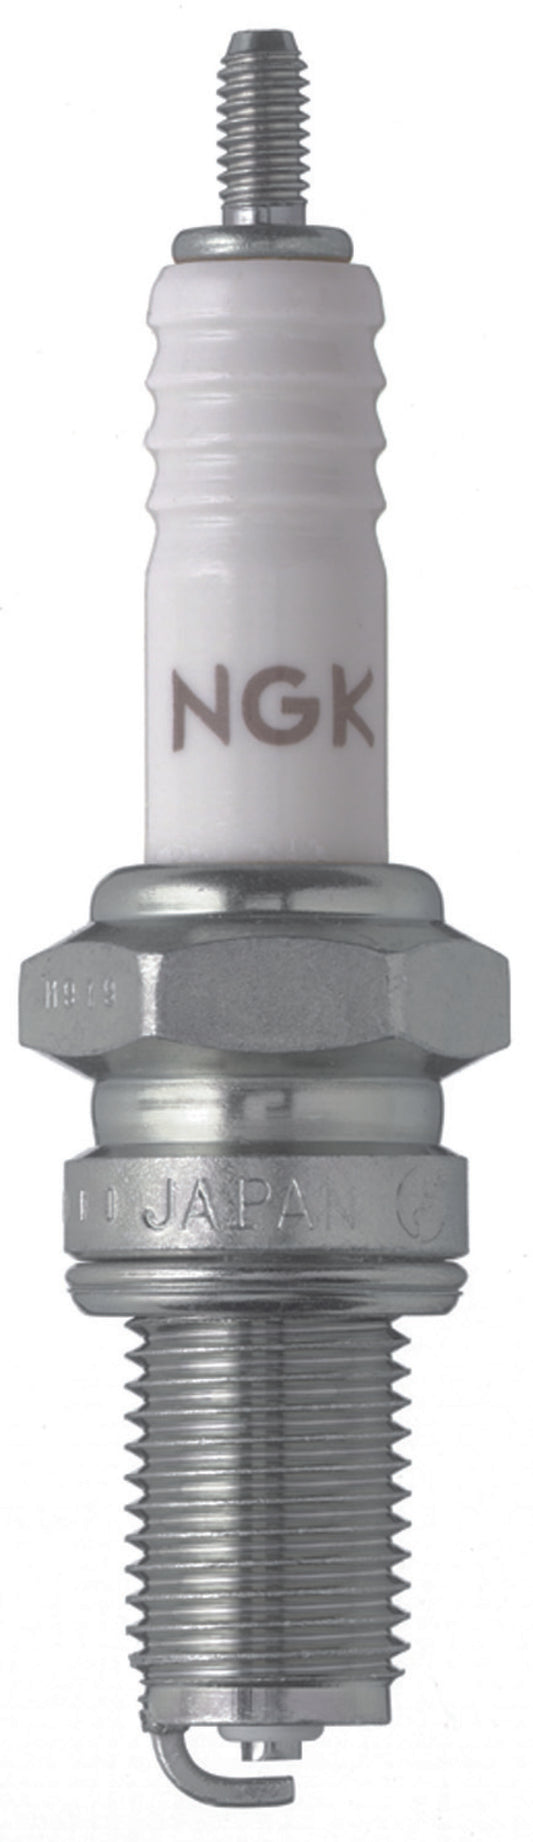 NGK Standard Spark Plug Box of 10 (D8EA)